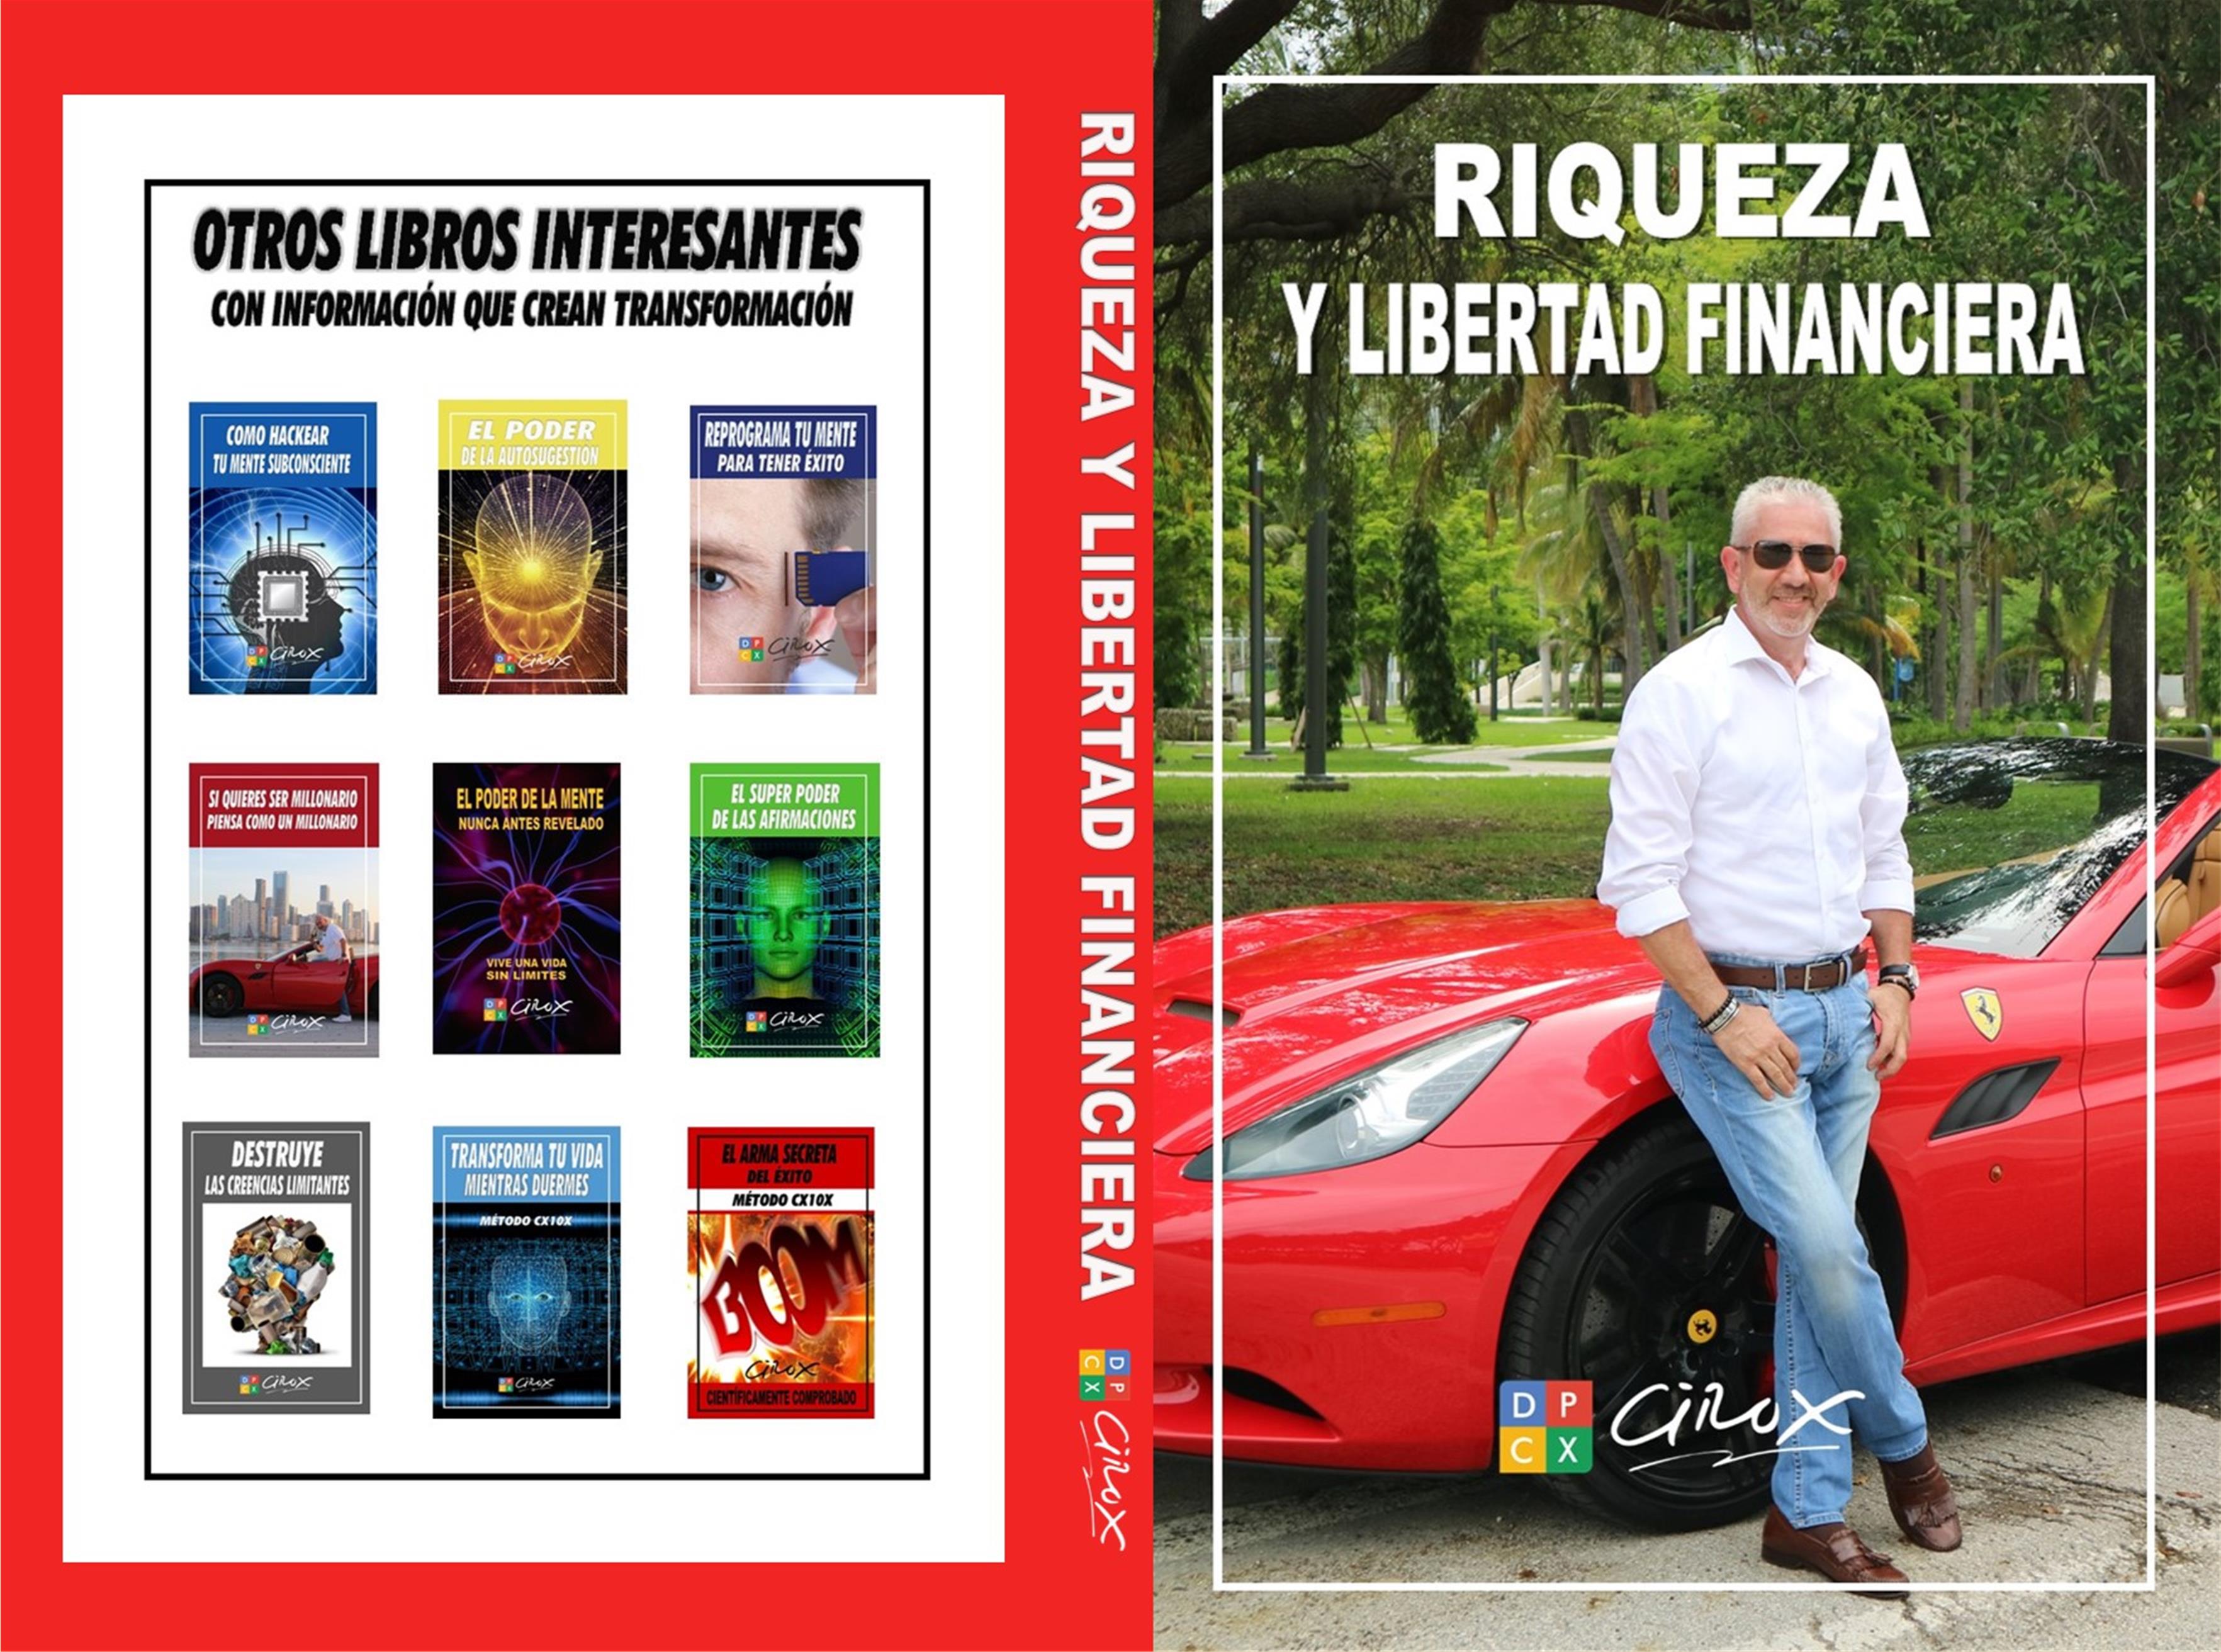 RIQUEZA Y LIBERTAD FINANCIERA cover image